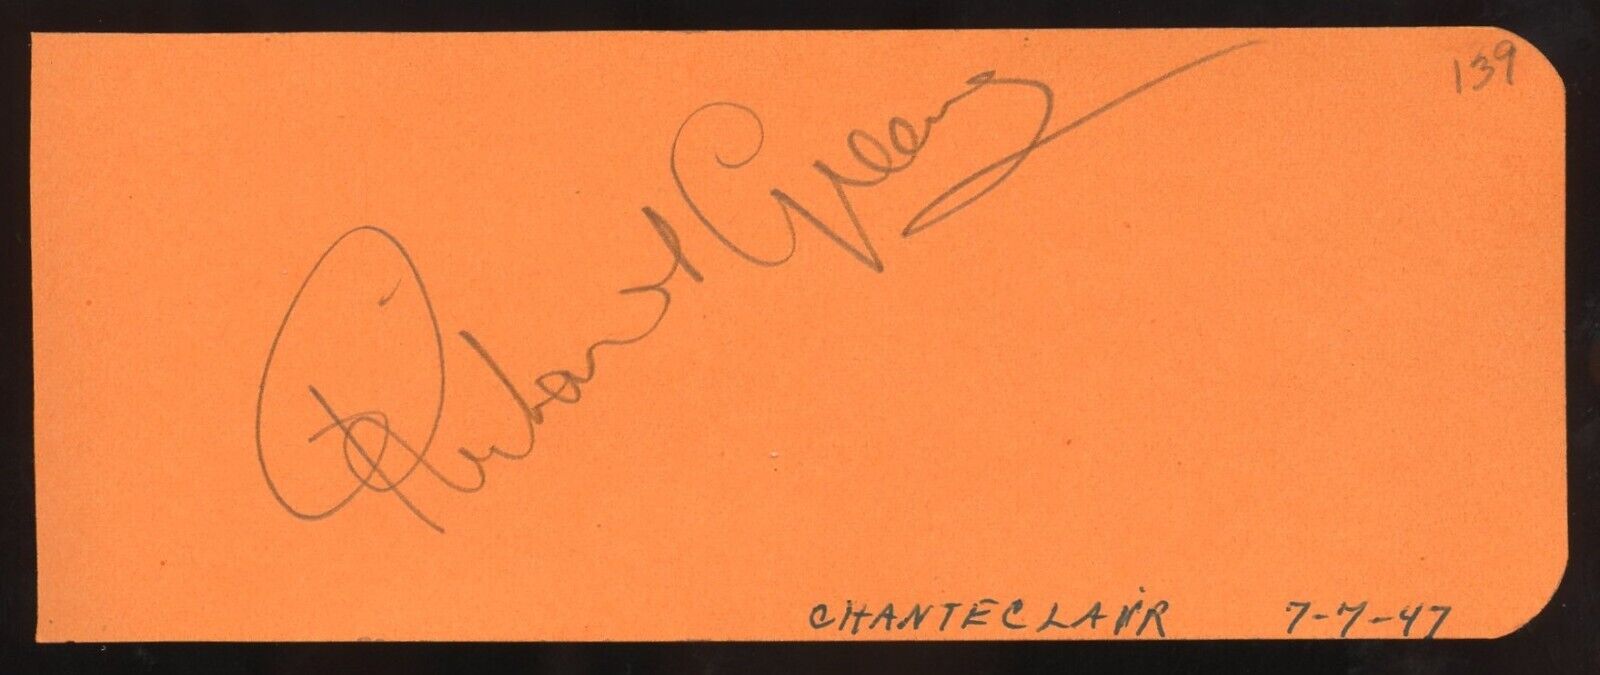 Richard Greene d1985 signed 2x5 cut autograph on 7-7-47 Chanteclair Restaurant